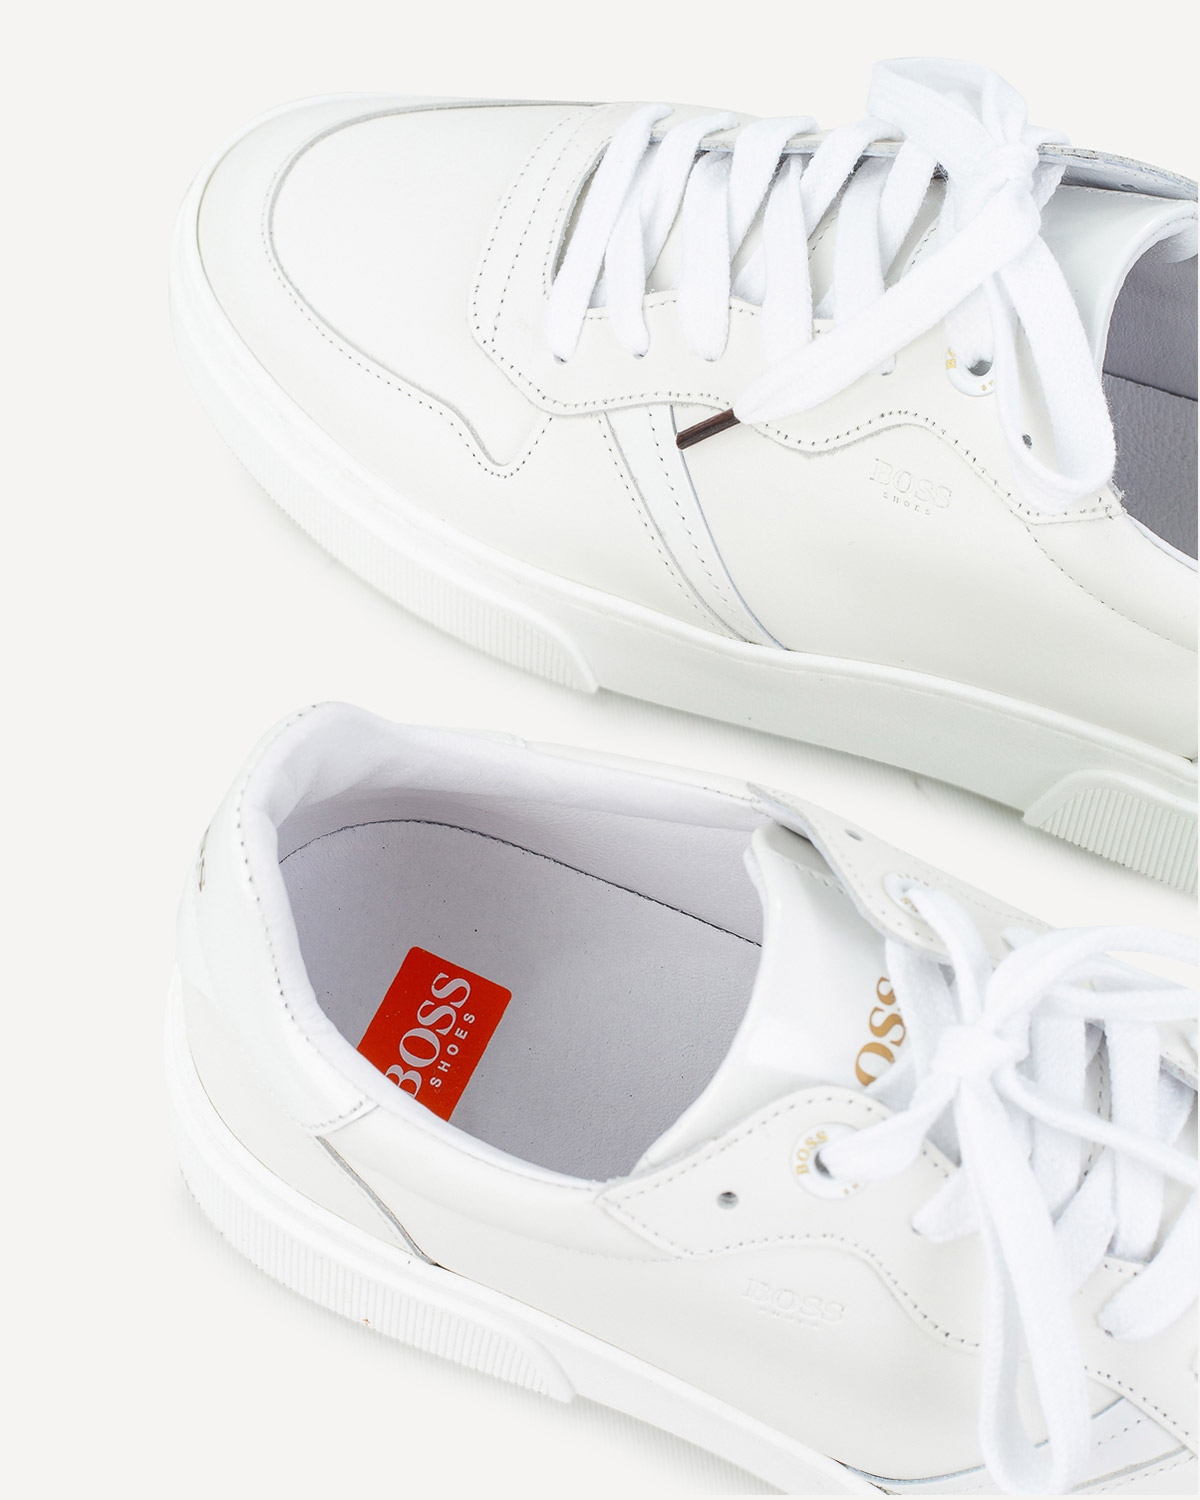 Άνδρας - Sneakers - Boss Shoes Λευκό